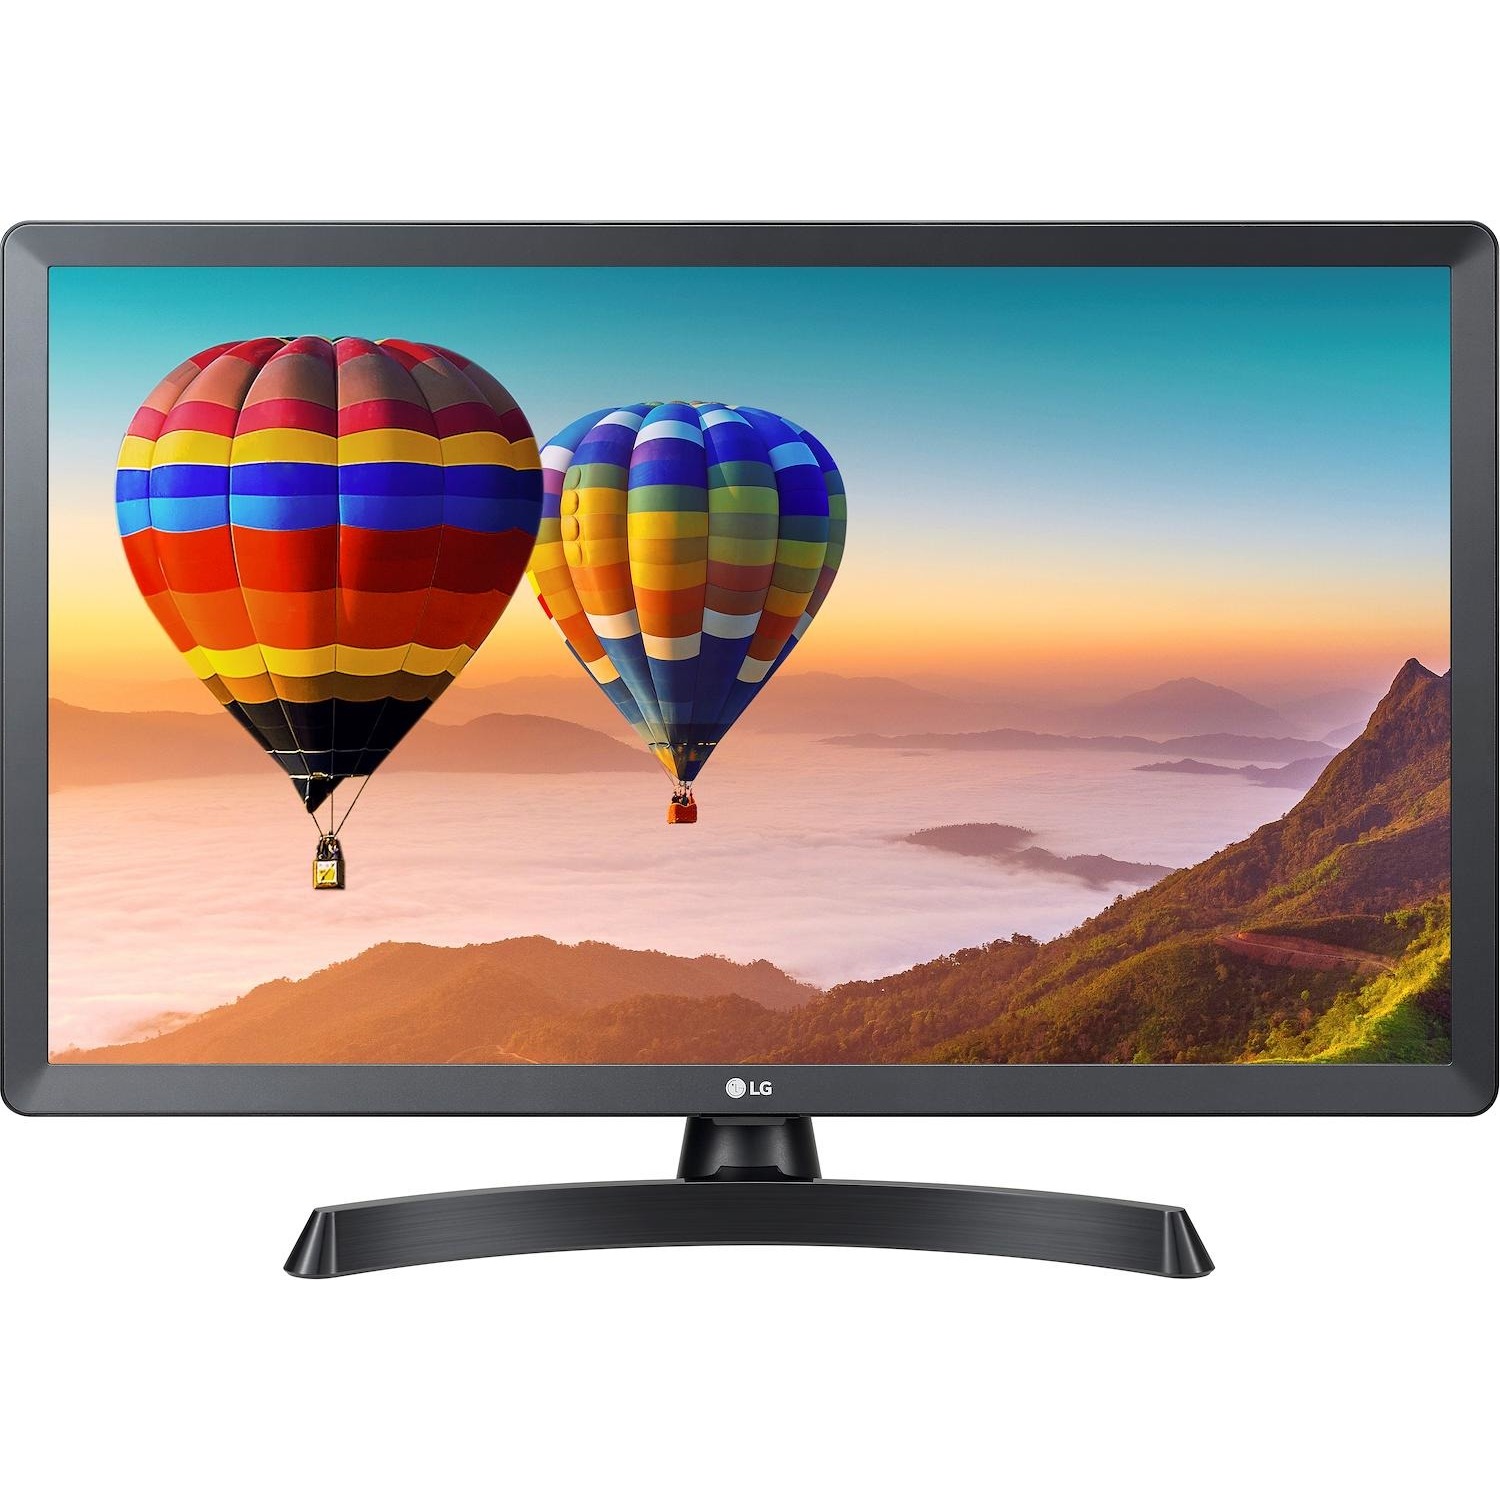 Immagine per TV LED Monitor Smart LG 28TN515S-PZ nero da DIMOStore